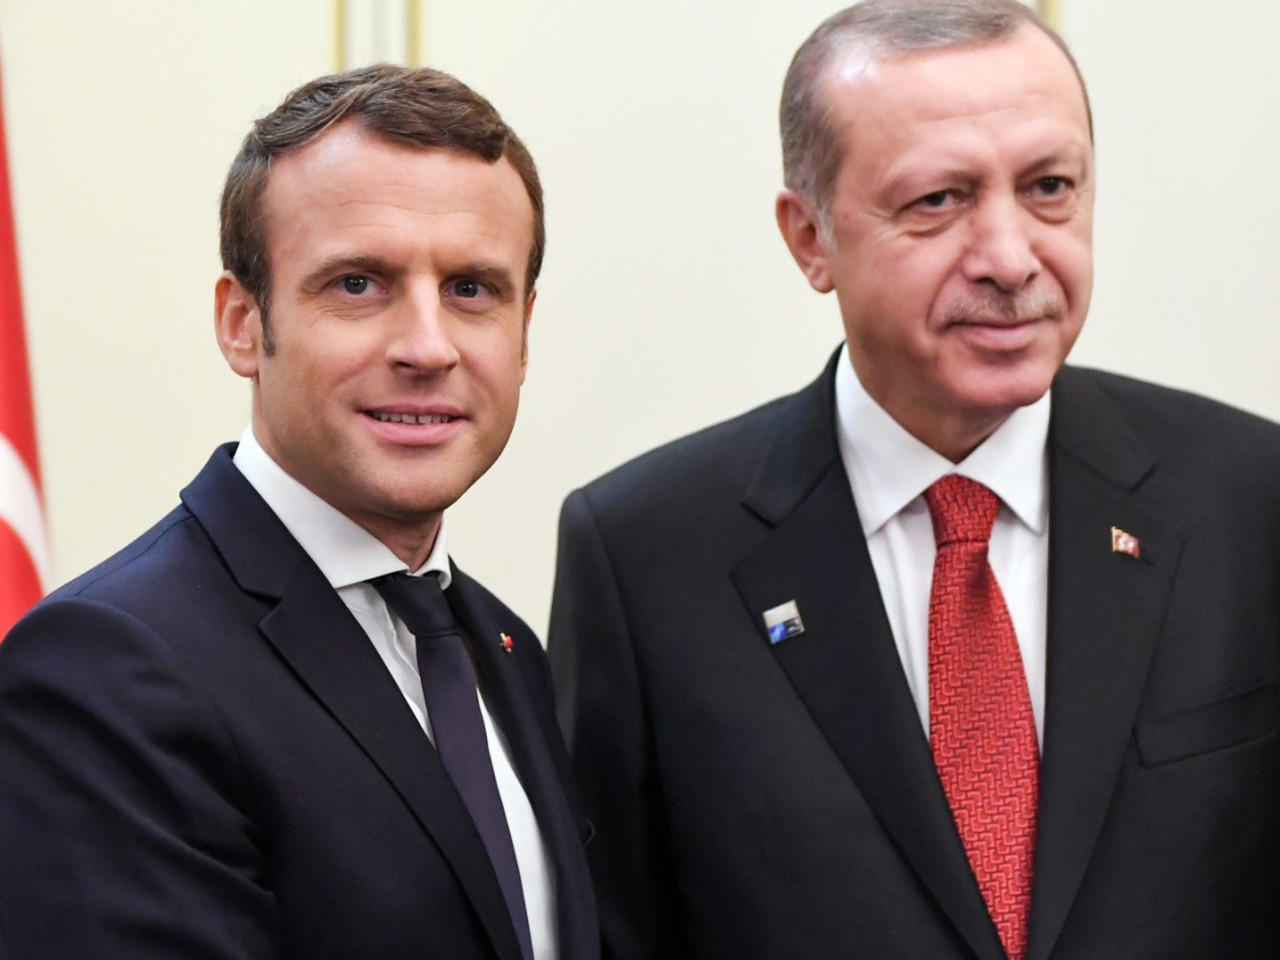 Macron trépied à Erdogan : la France expulse la Turquie de Libye